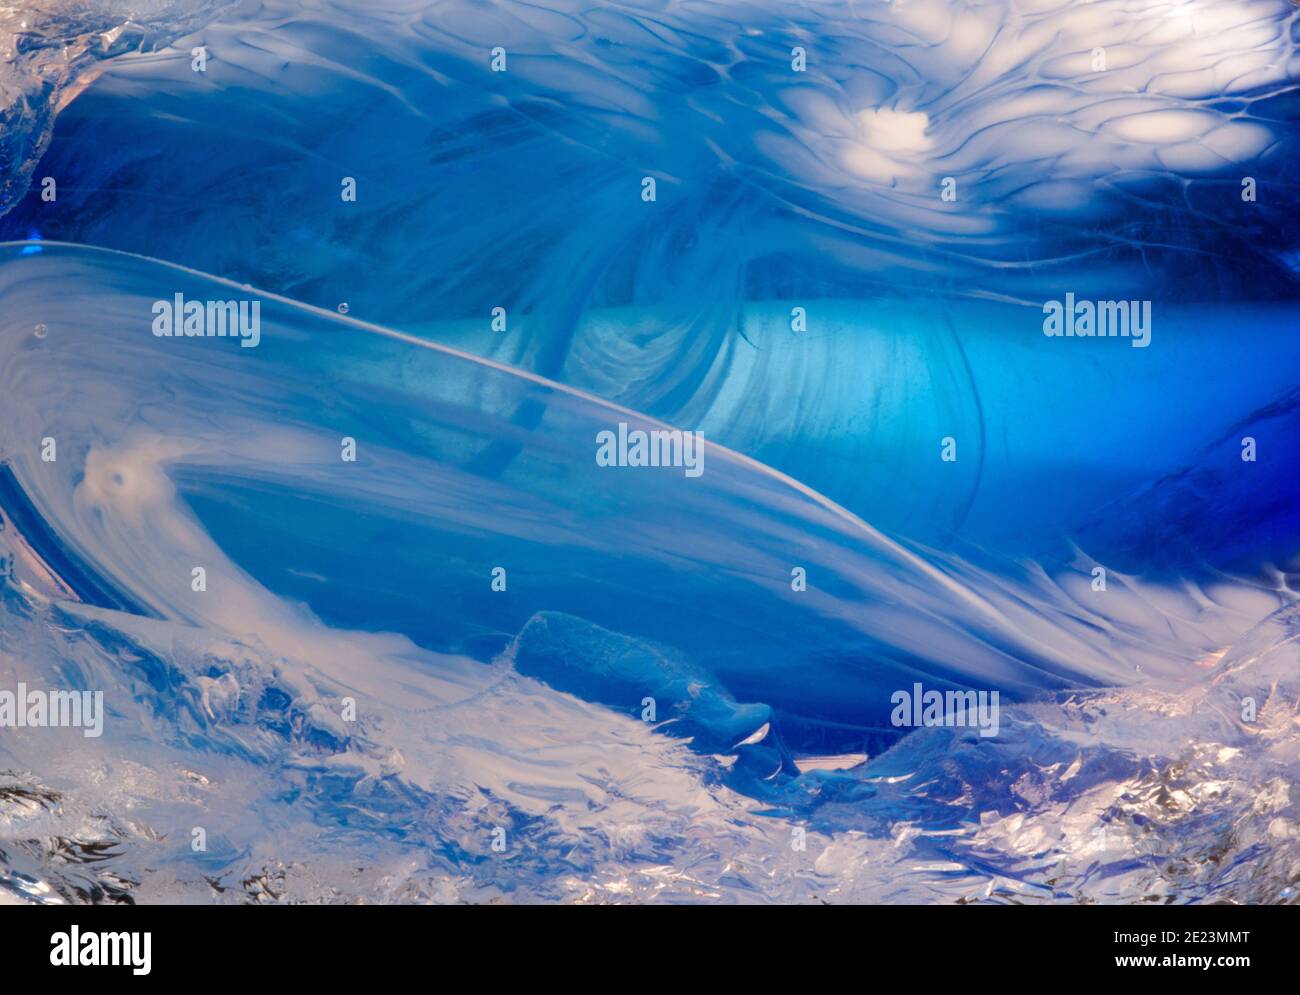 Nahaufnahme Makro-Fotografie von komplizierten fließenden Mustern in einer handgefertigten, mundgeblasenen blauen und weißen Glasvase. Stockfoto